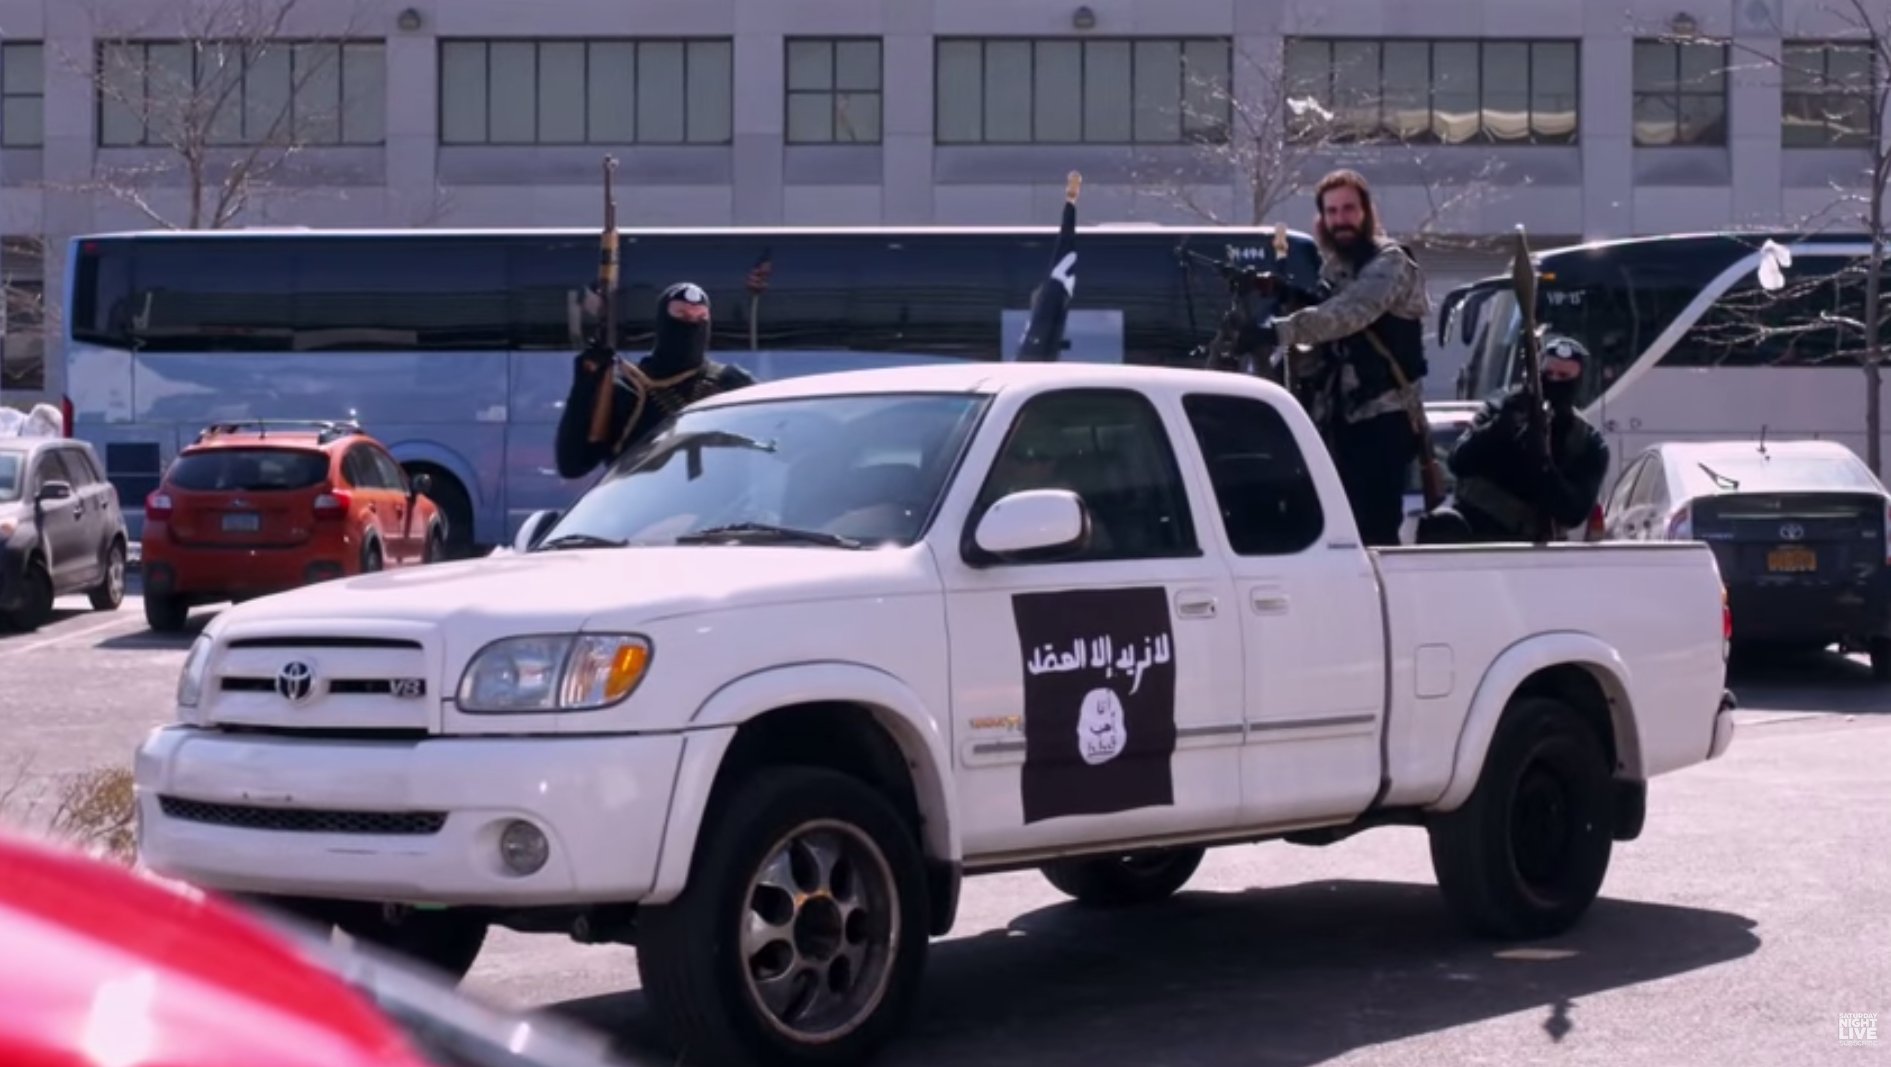 Ξεκινά ο εμφύλιος μεταξύ των μαχητών του ISIS – Καμικάζι αυτοκτονίας πήρε μαζί του 3 ισλαμιστές (βίντεο)